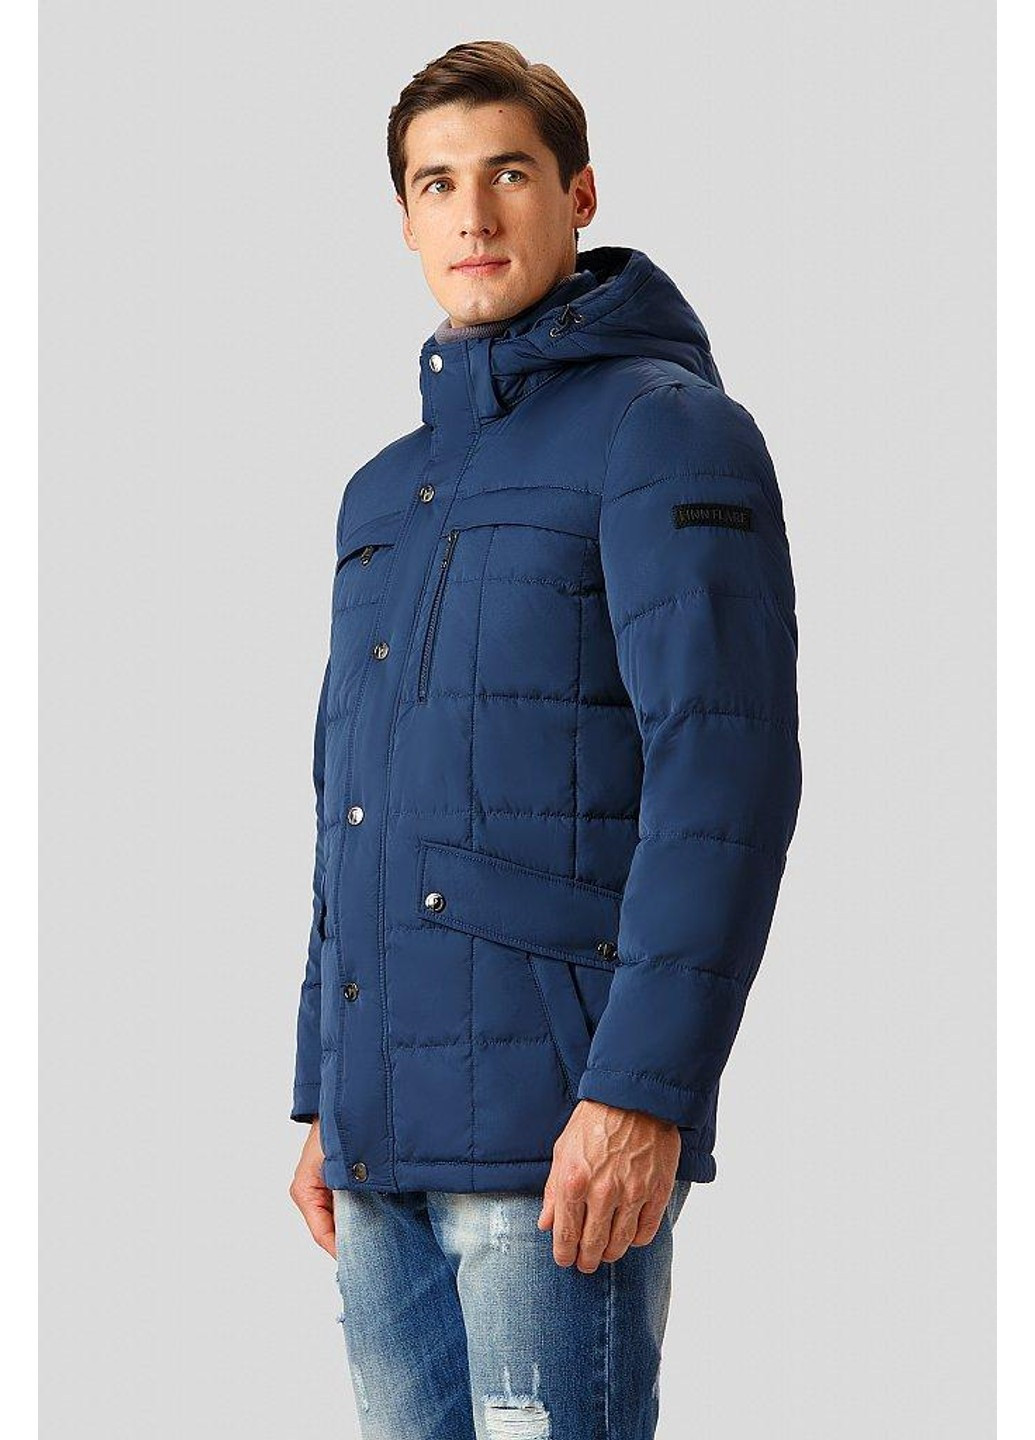 Синяя зимняя зимняя куртка w18-21003-114 Finn Flare